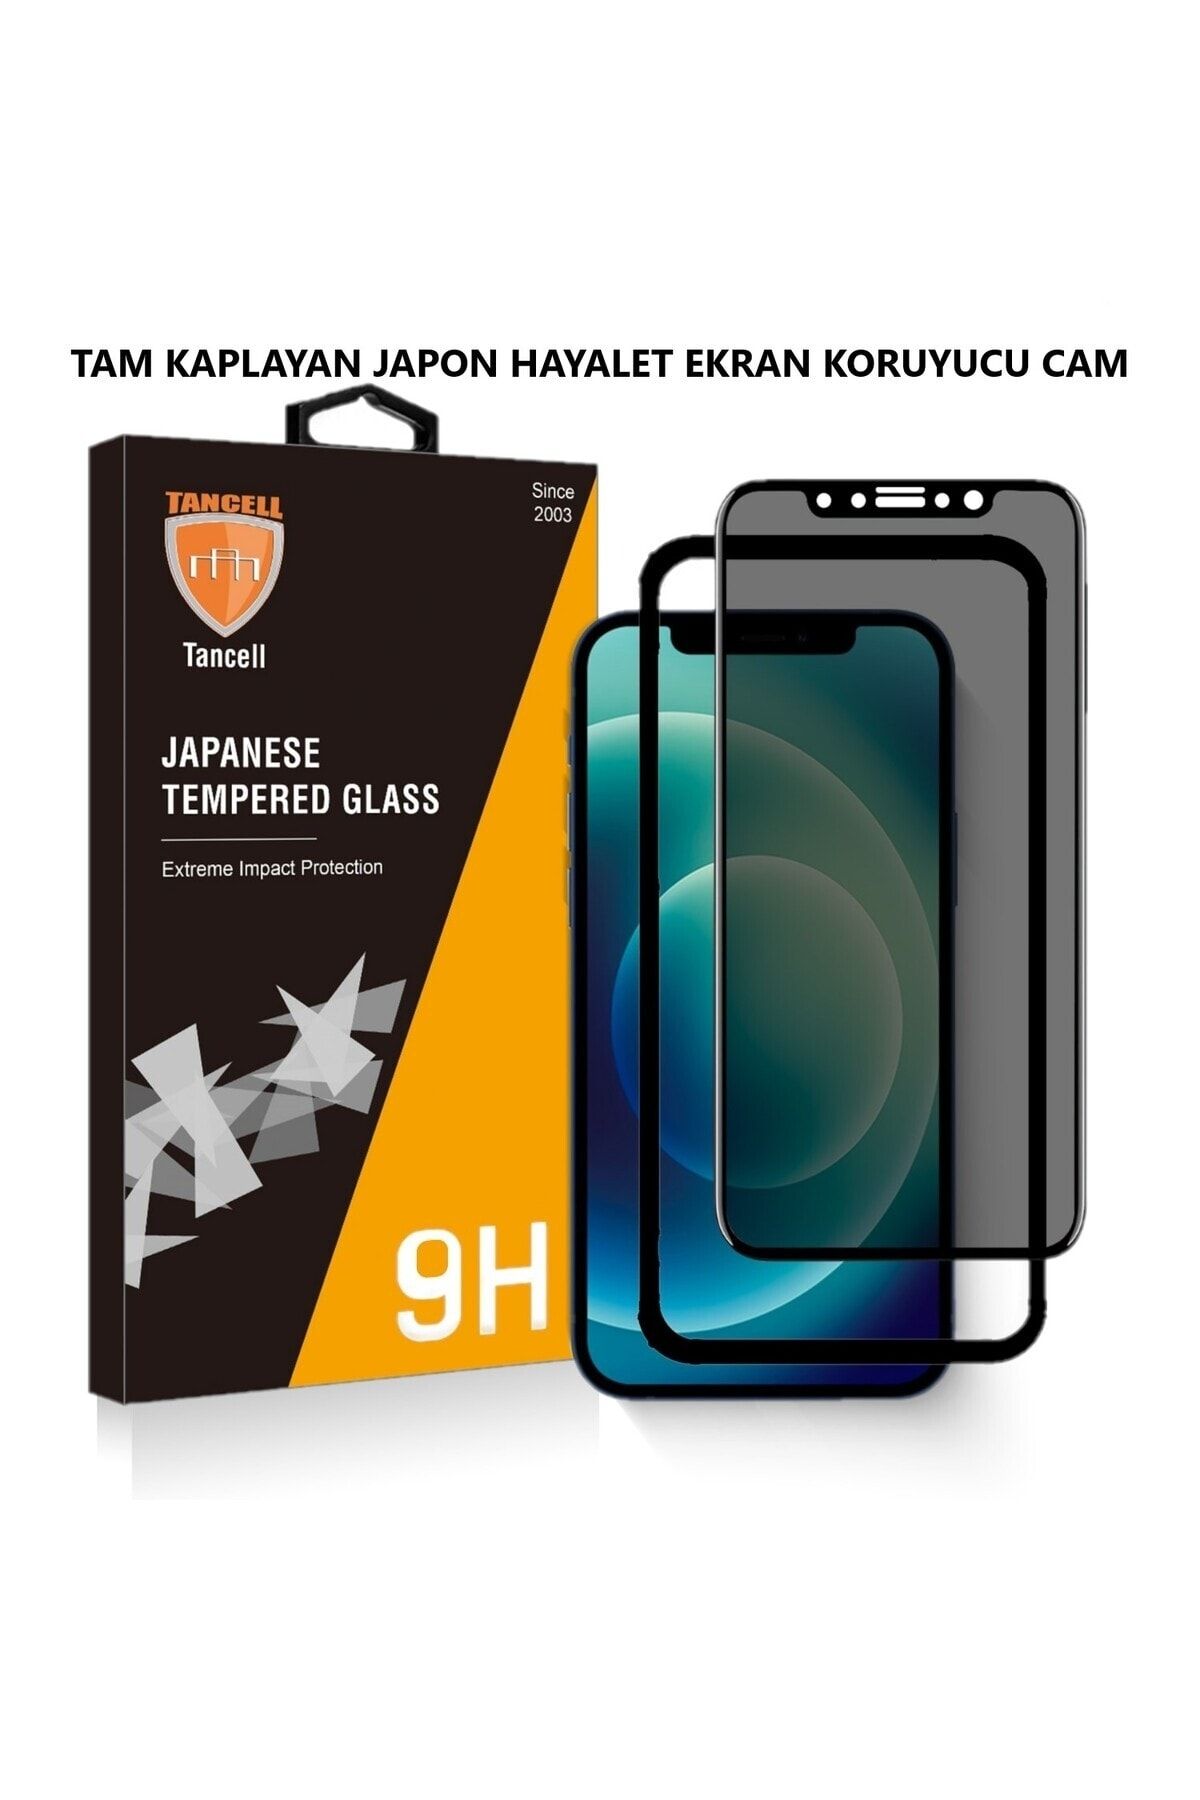 TANCELL İphone 12 Pro Max Uyumlu Hayalet Ekran Koruyucu Tam Kaplayan Japon Kırılmaz Cam 6,7 Inc (1 ADET)